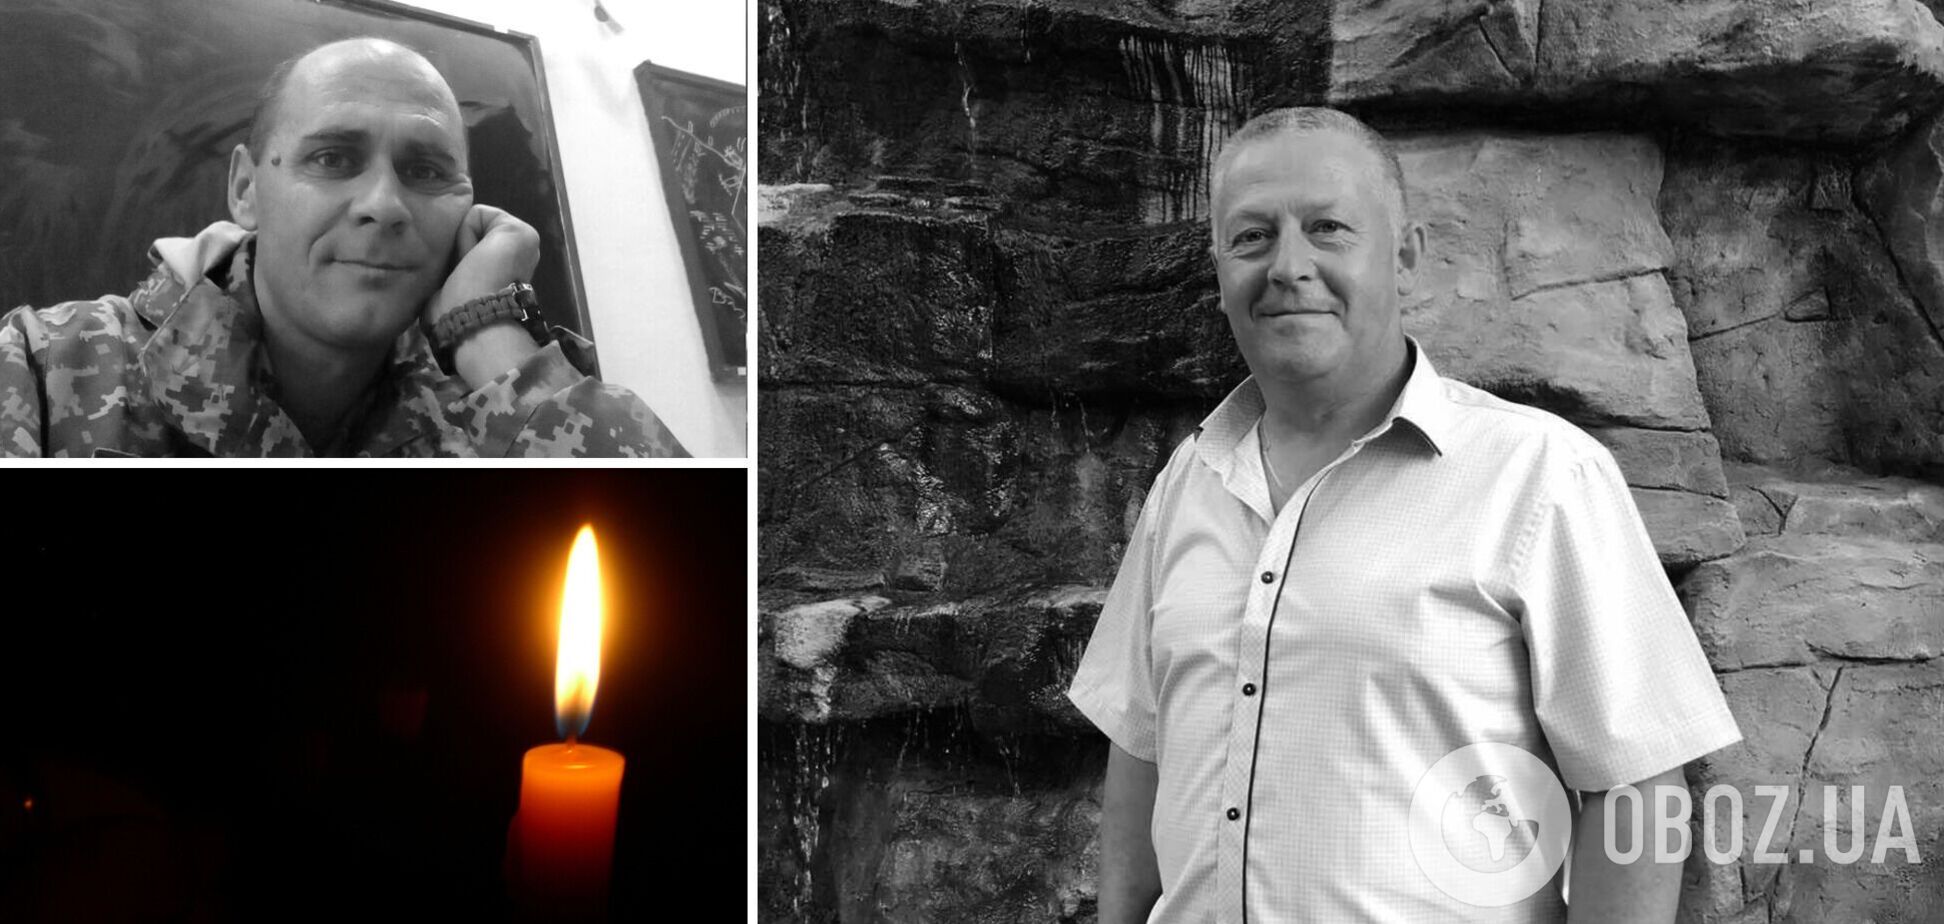 На Донбассе погибло двое украинских военных Руслан Прусов и Вадим Федосеев